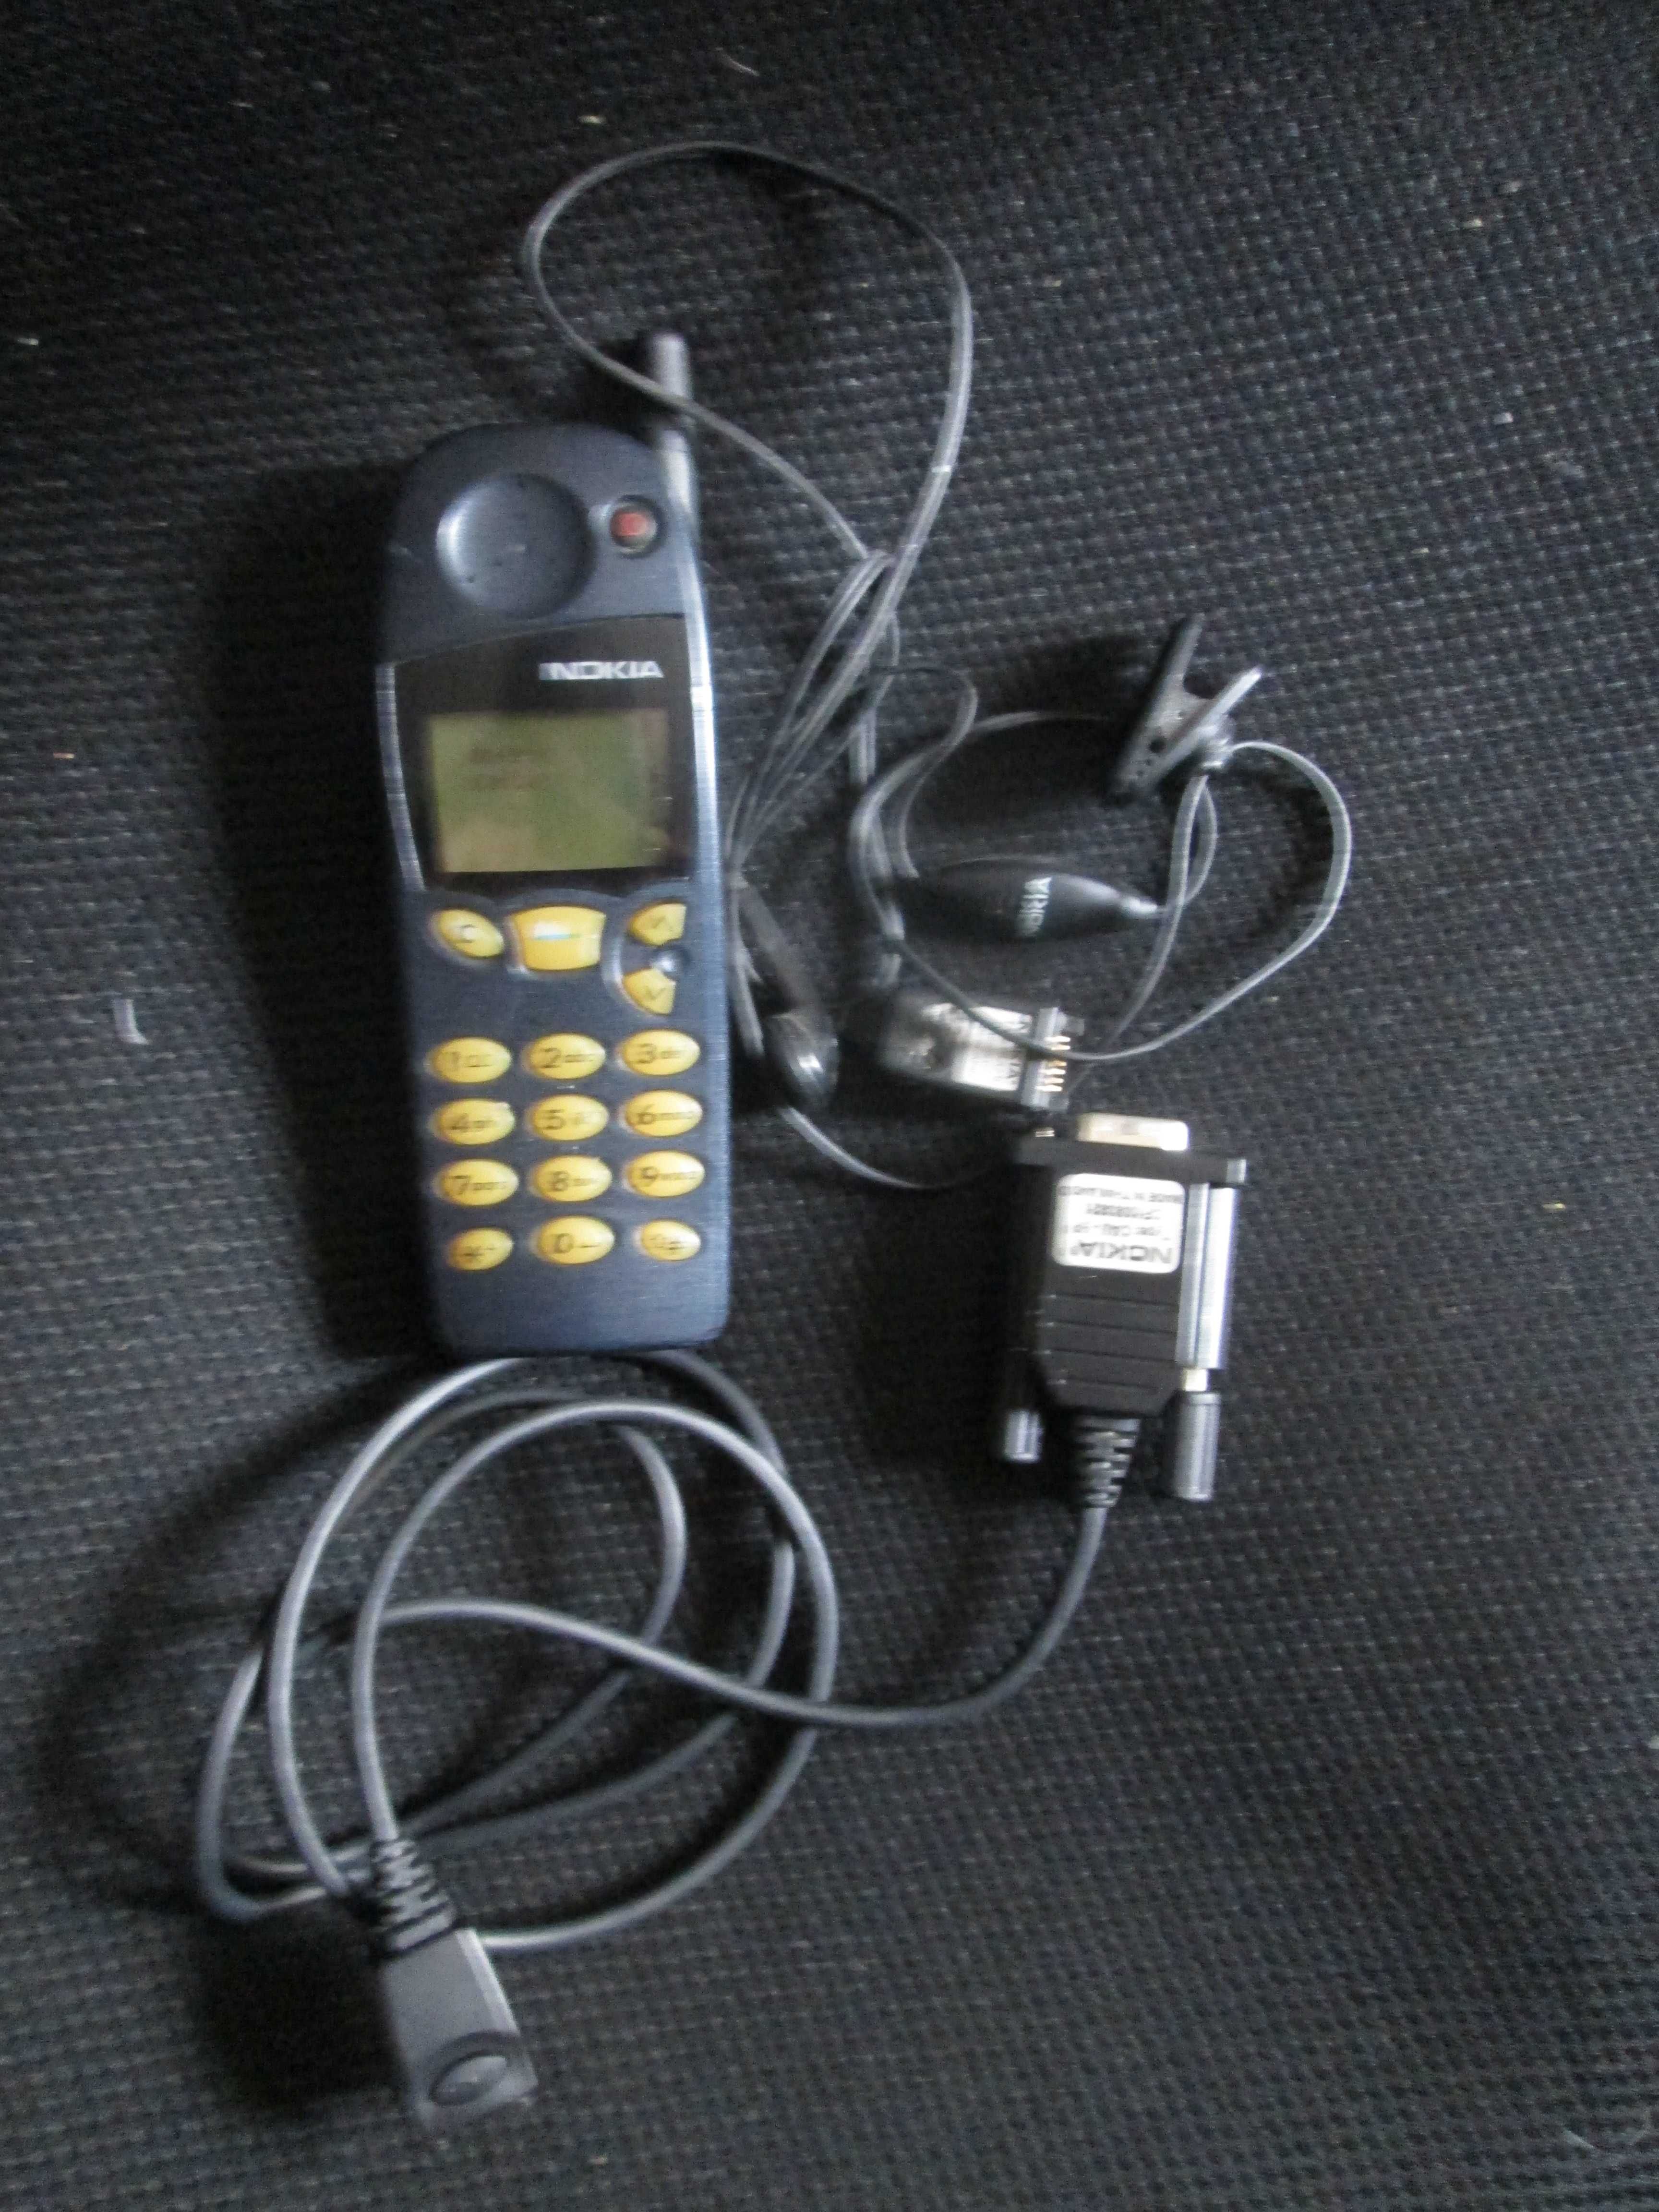 Nokia 5110, excelente estado, com cabo de dados e de mãos-livres